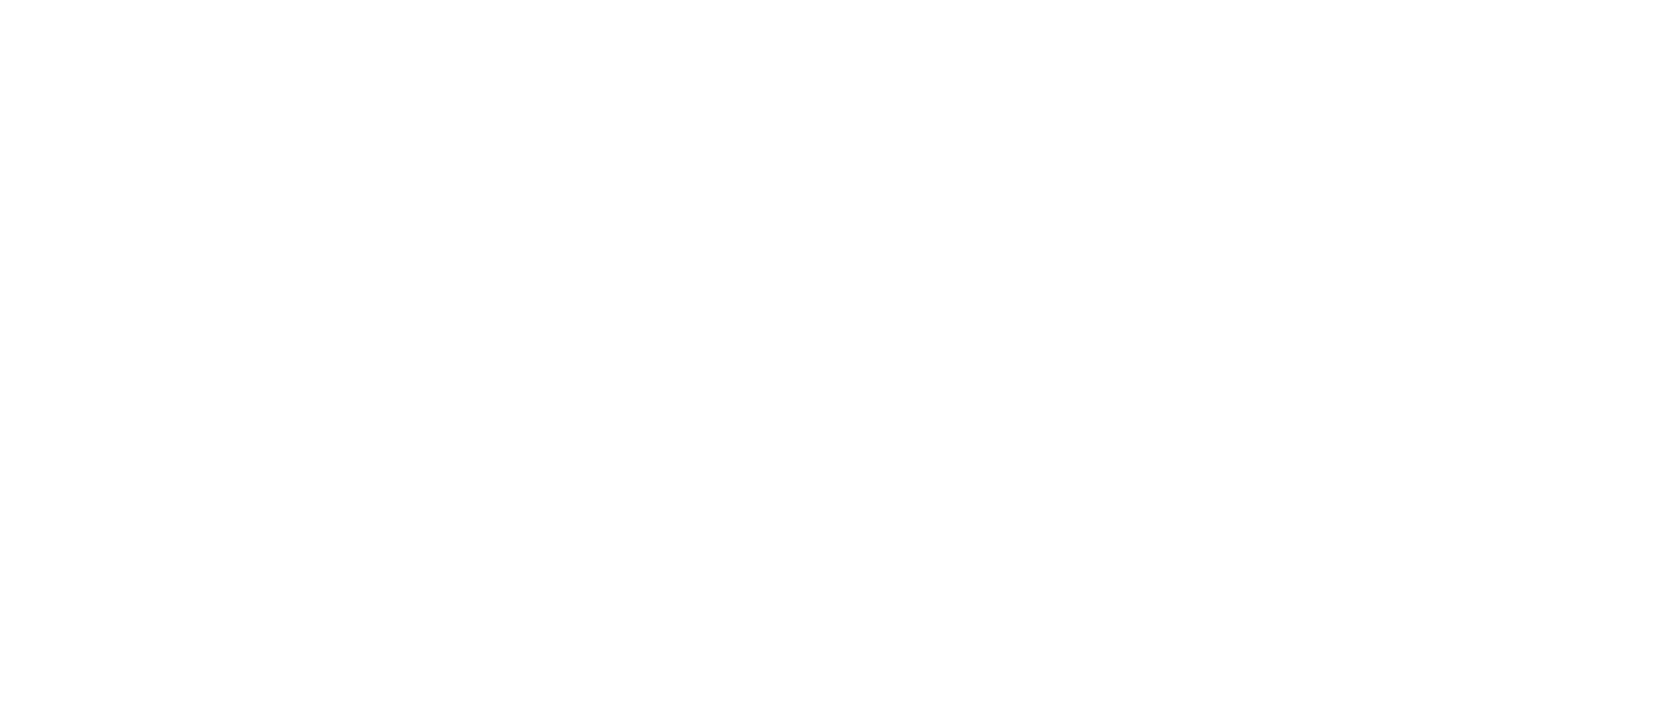 Кейс сервиса BRANDNATION - Дизайн этикетки пива. Брендинговое агентство BRANDNATION в Москве и Санкт-Петербурге. Услуги: разработка логотипа и фирменного стиля, дизайн упаковки, брендбук, ребрендинг, разработка сайта.